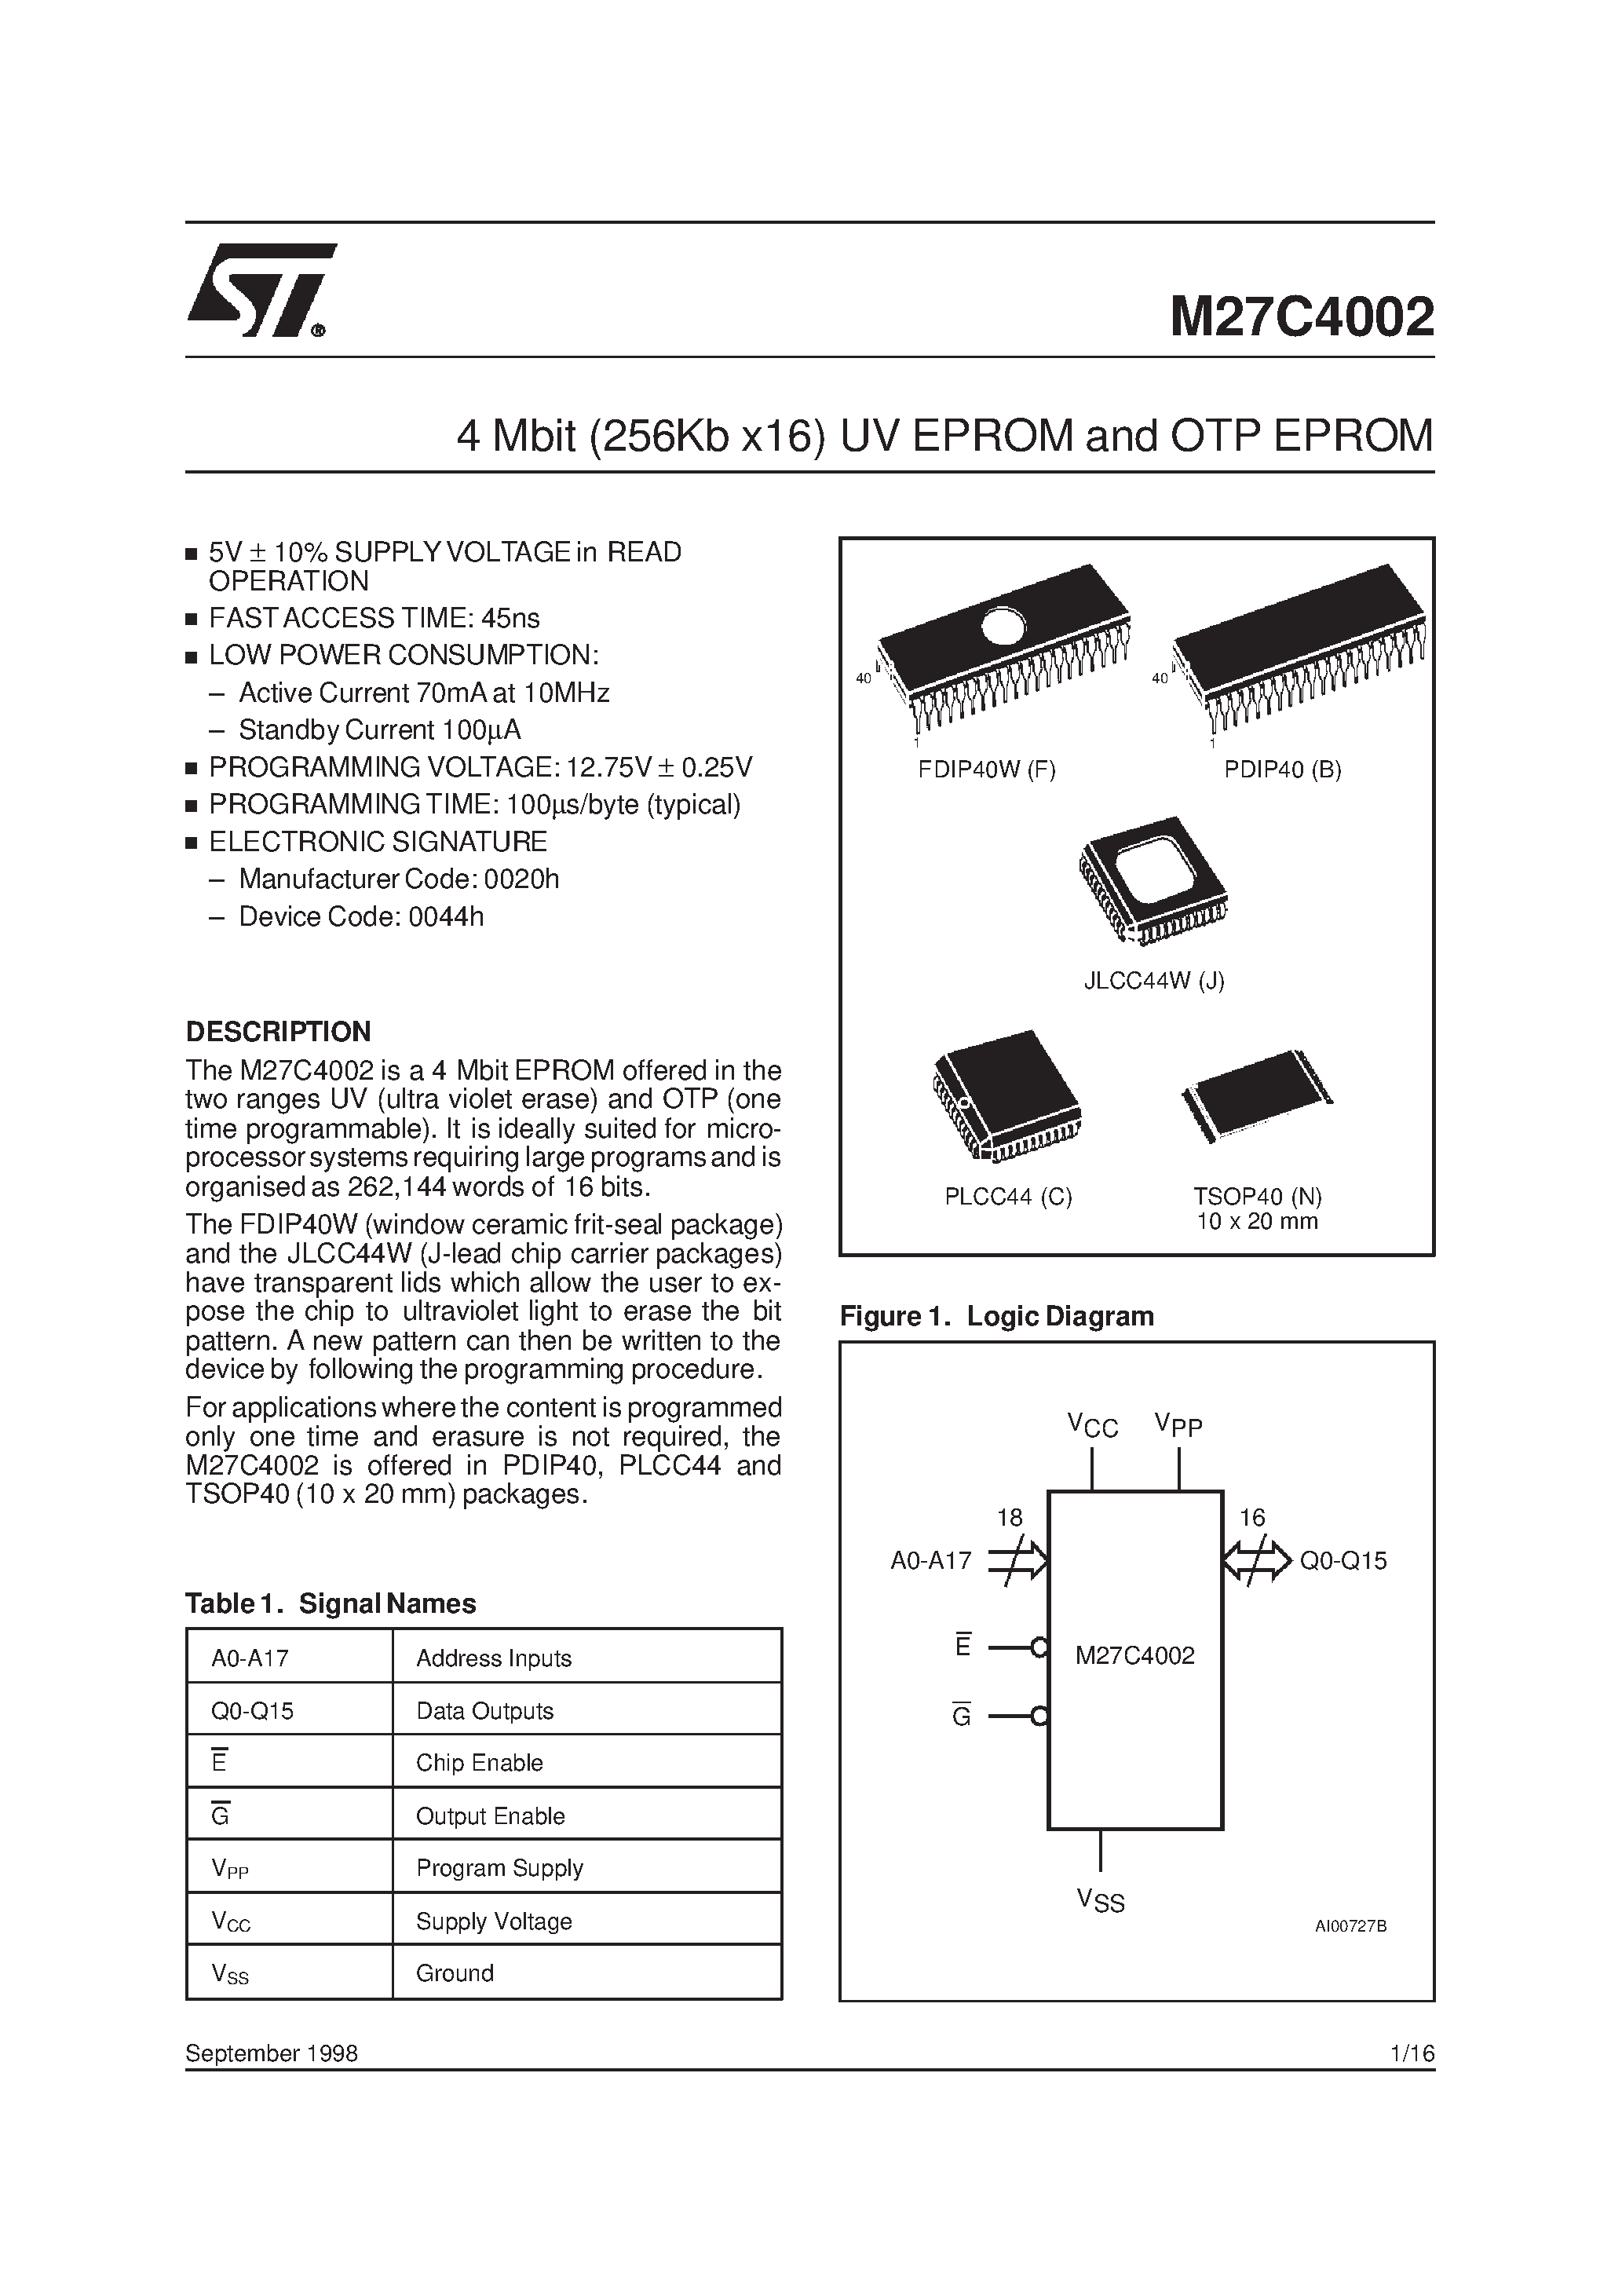 Datasheet M27C4002-10XF1X - 4 Mbit 256Kb x16 UV EPROM and OTP EPROM page 1